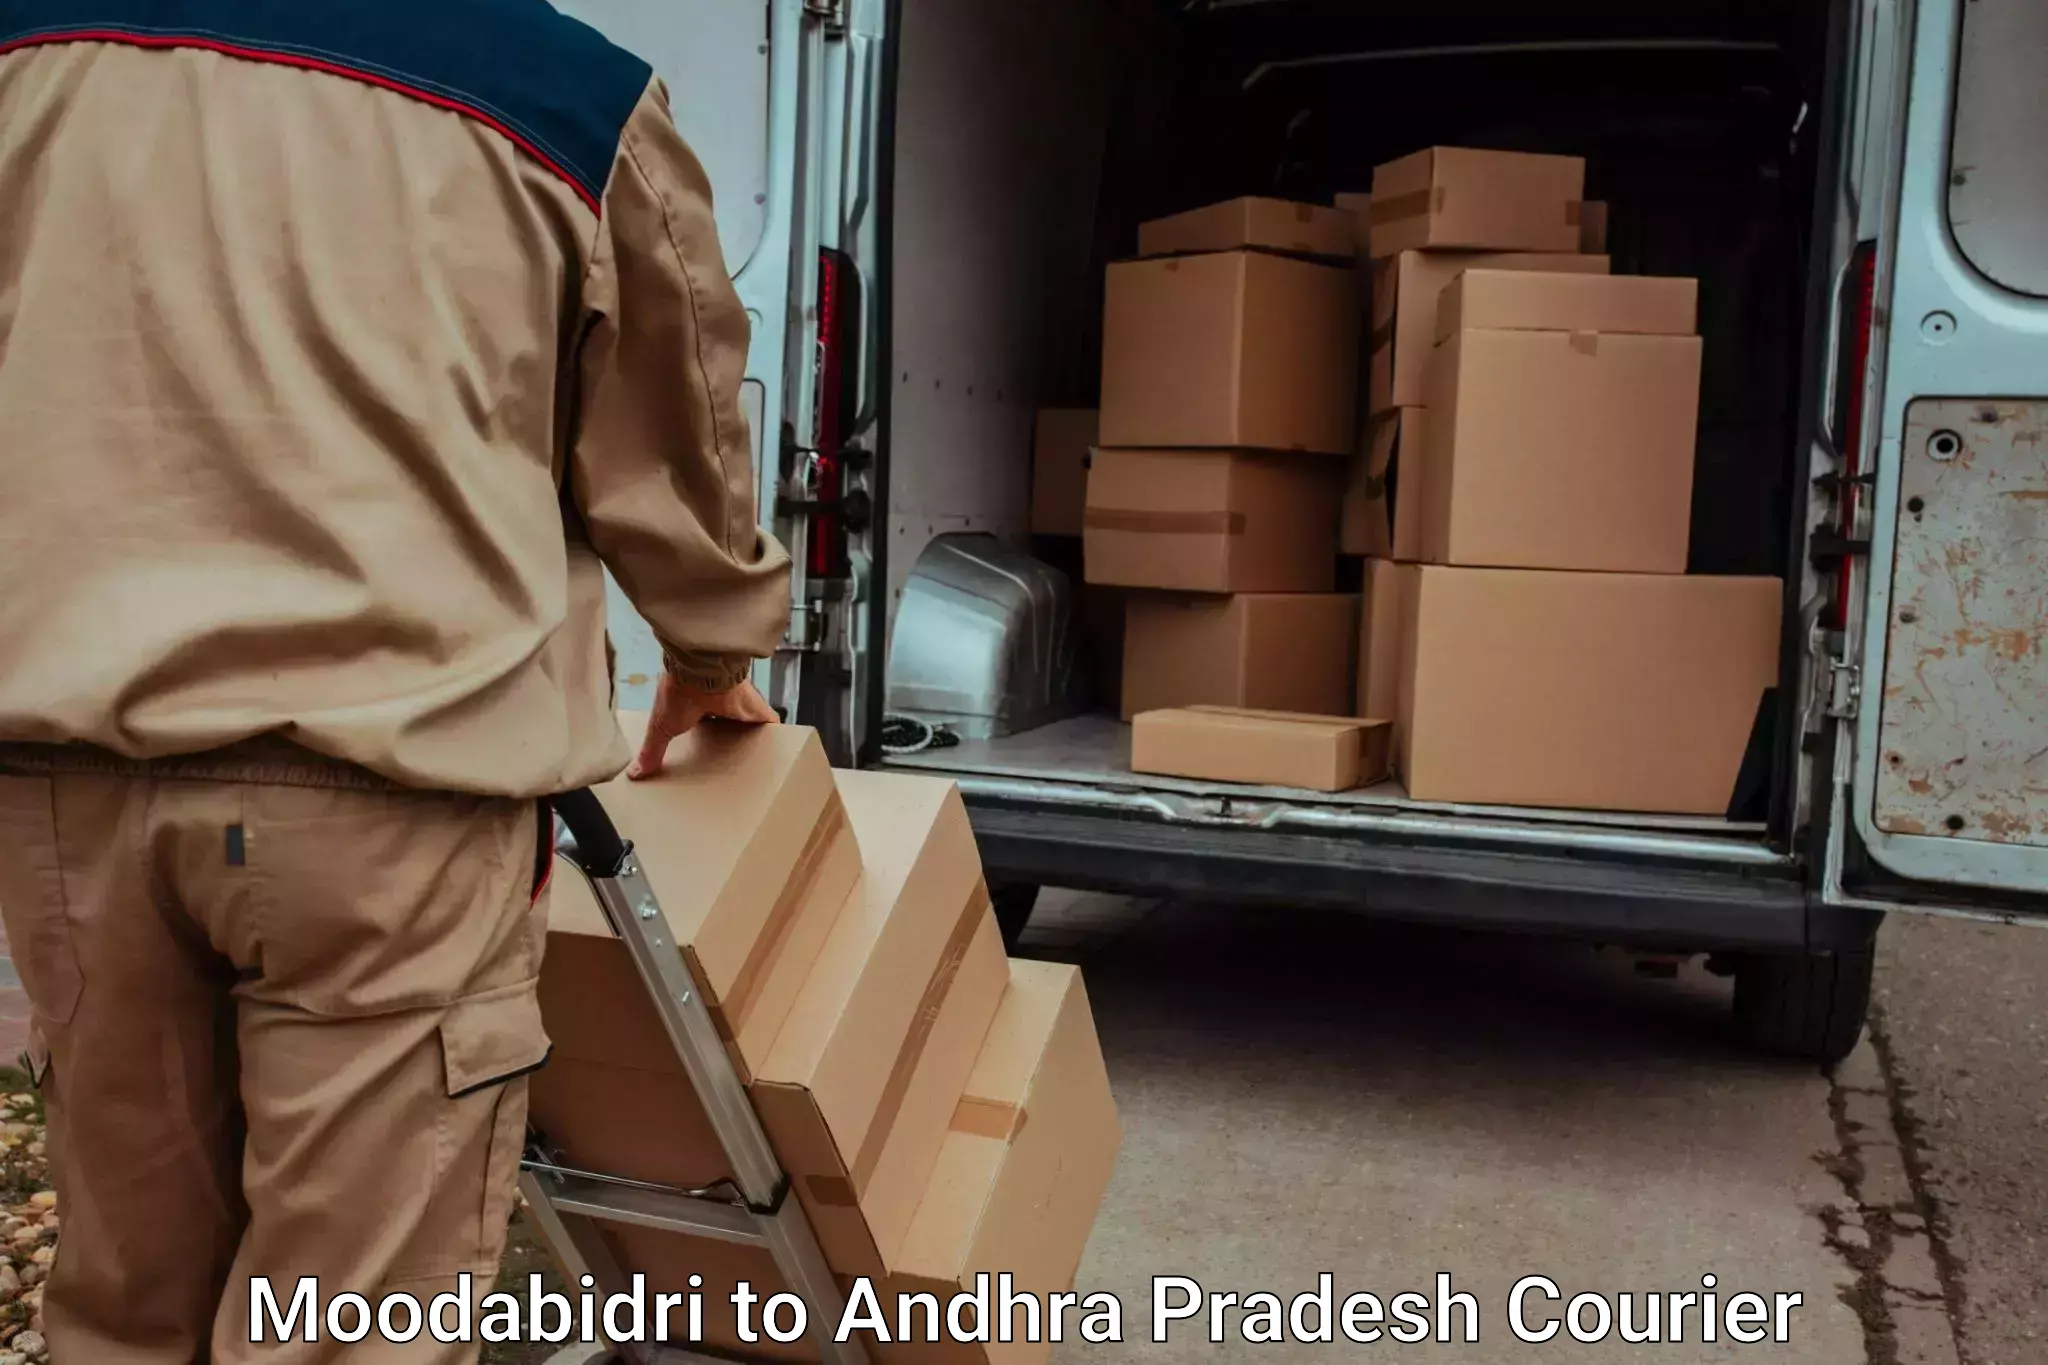 Trusted moving company Moodabidri to Veldurthi